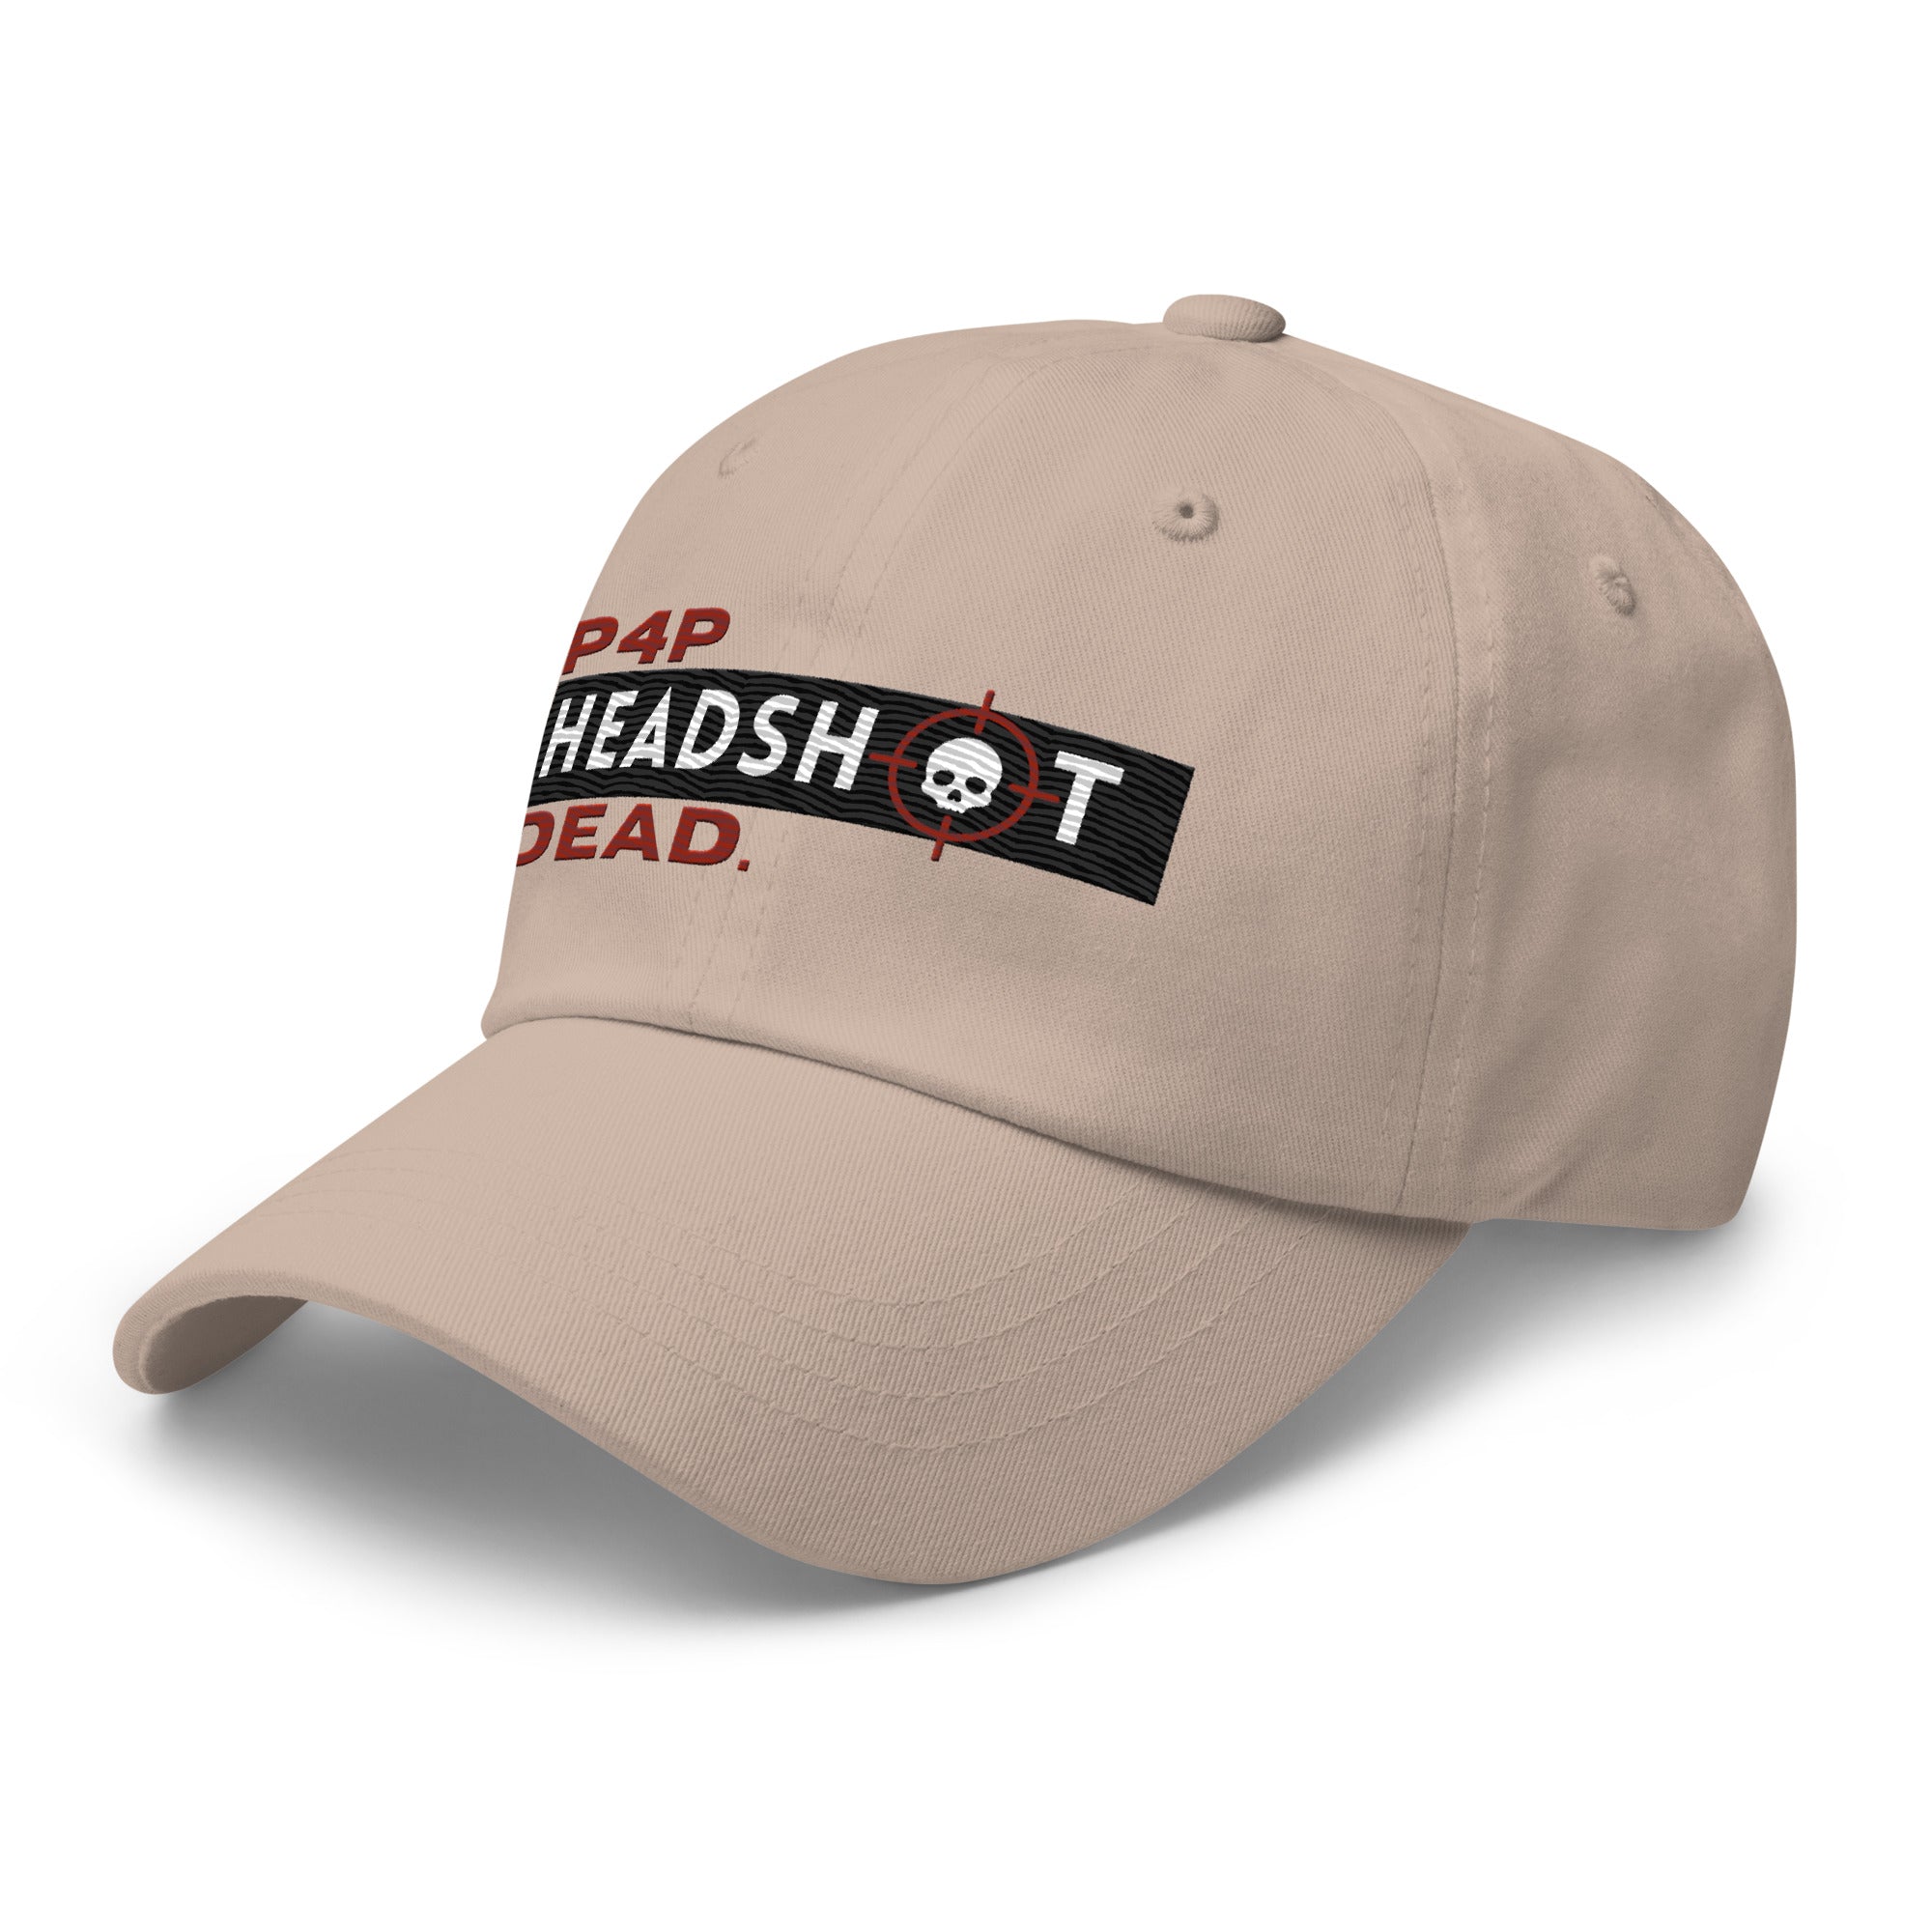 Pound for Pound, Headshot, Dead! Premium MMA Hat (Red Alert)